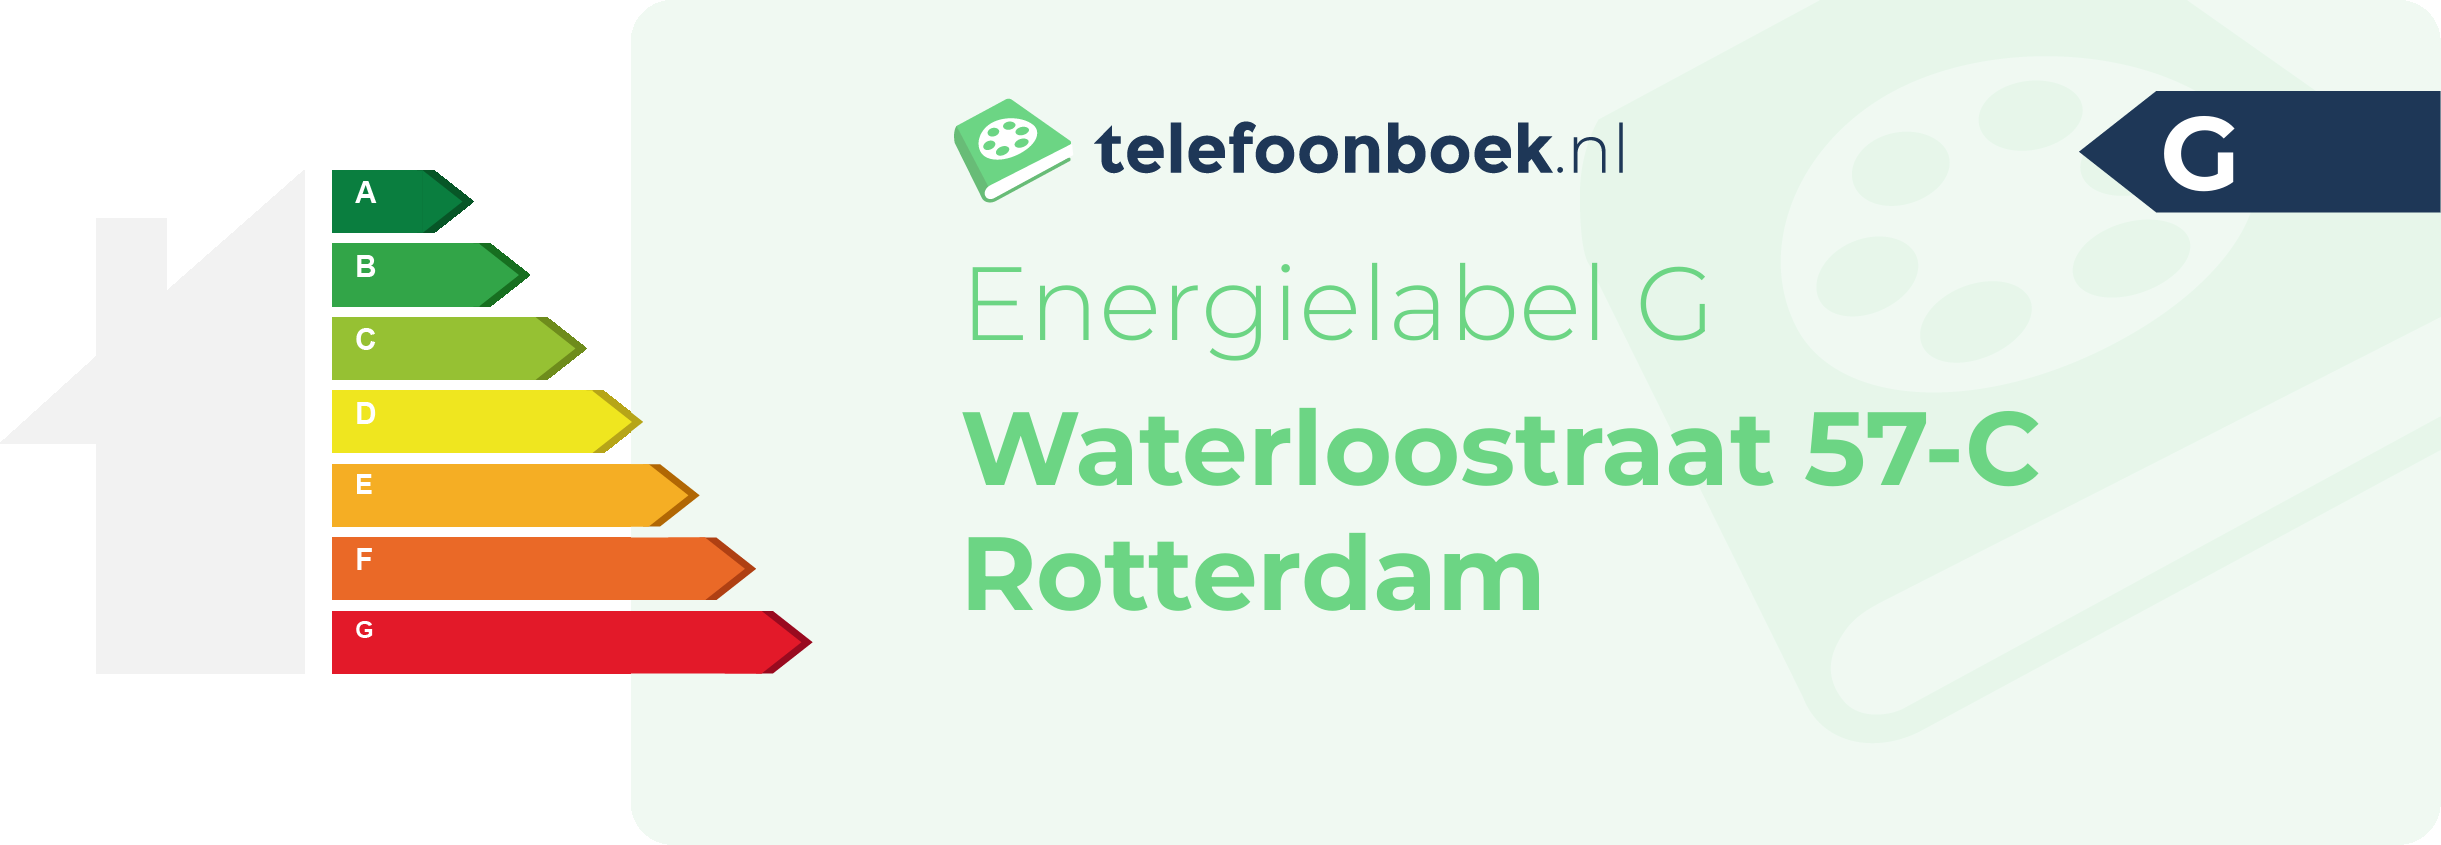 Energielabel Waterloostraat 57-C Rotterdam